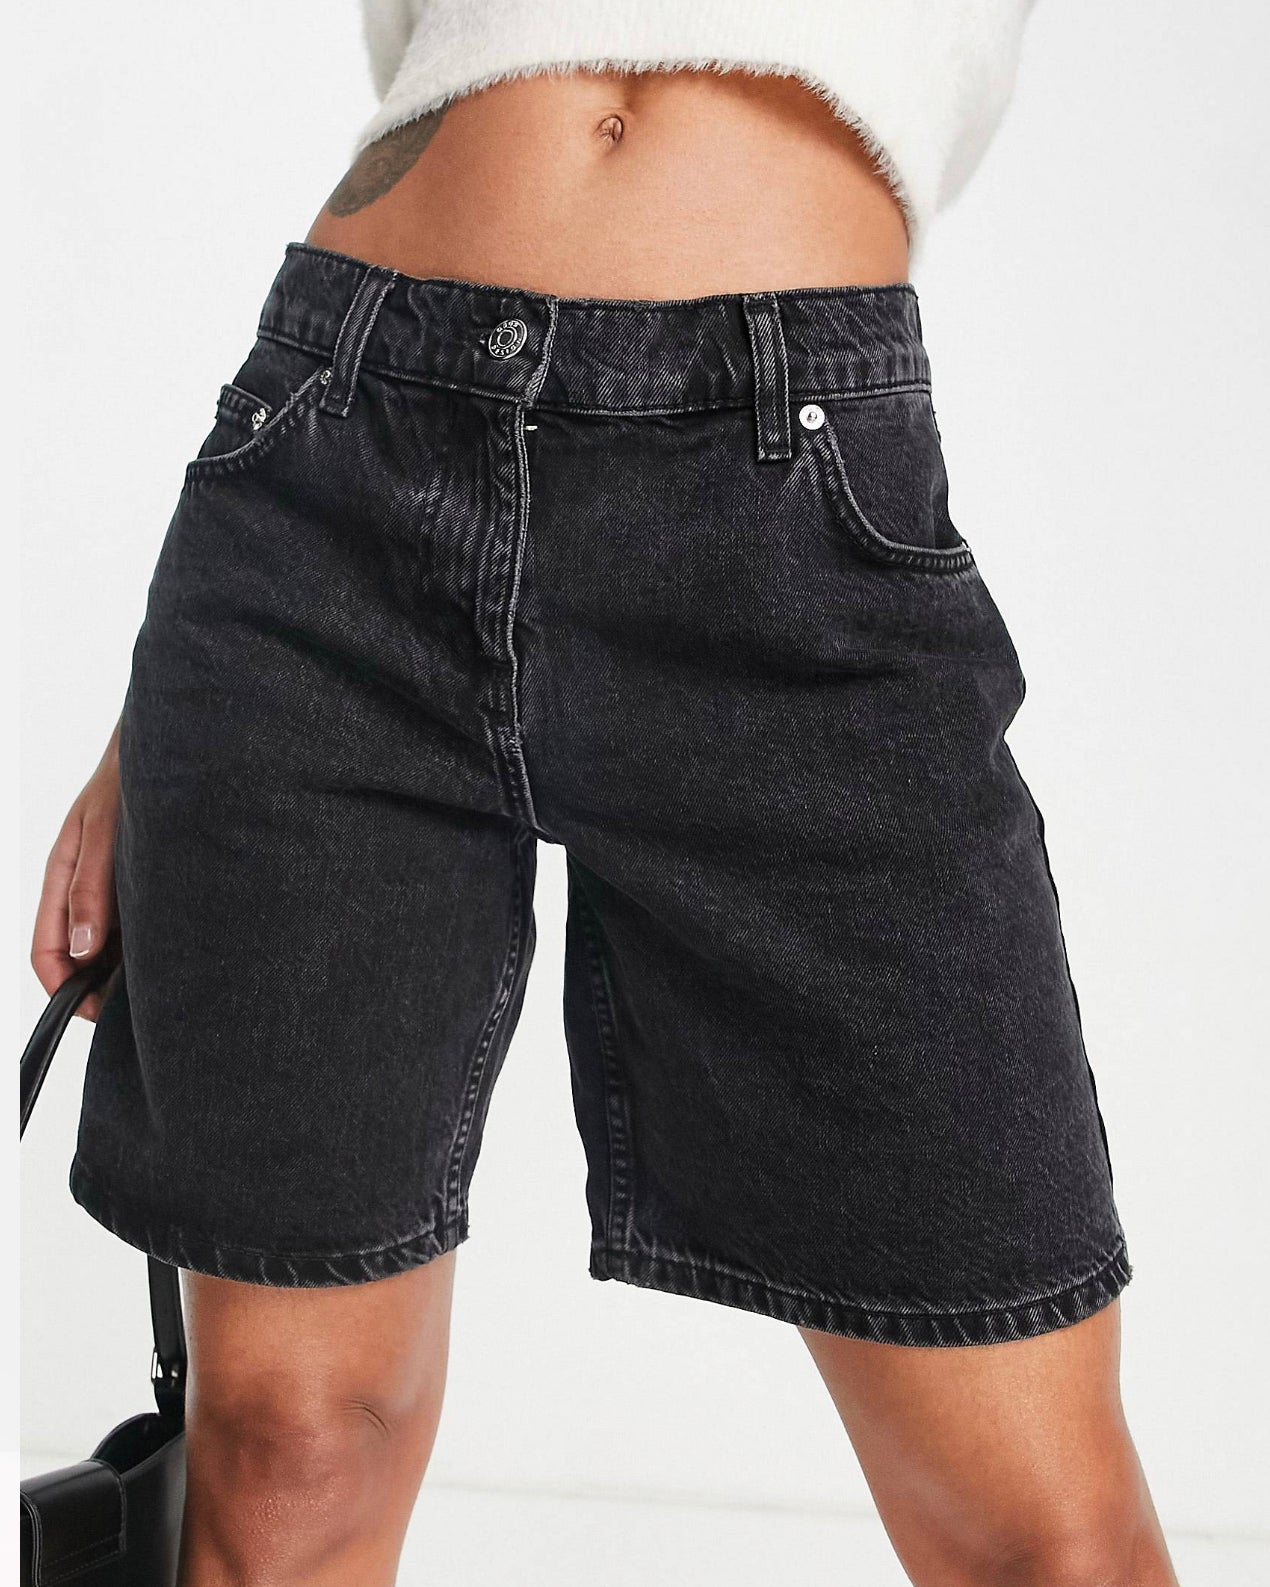 B2 Icon Denim Boyfriend Jeans Shorts in Washed Black – Garmisland